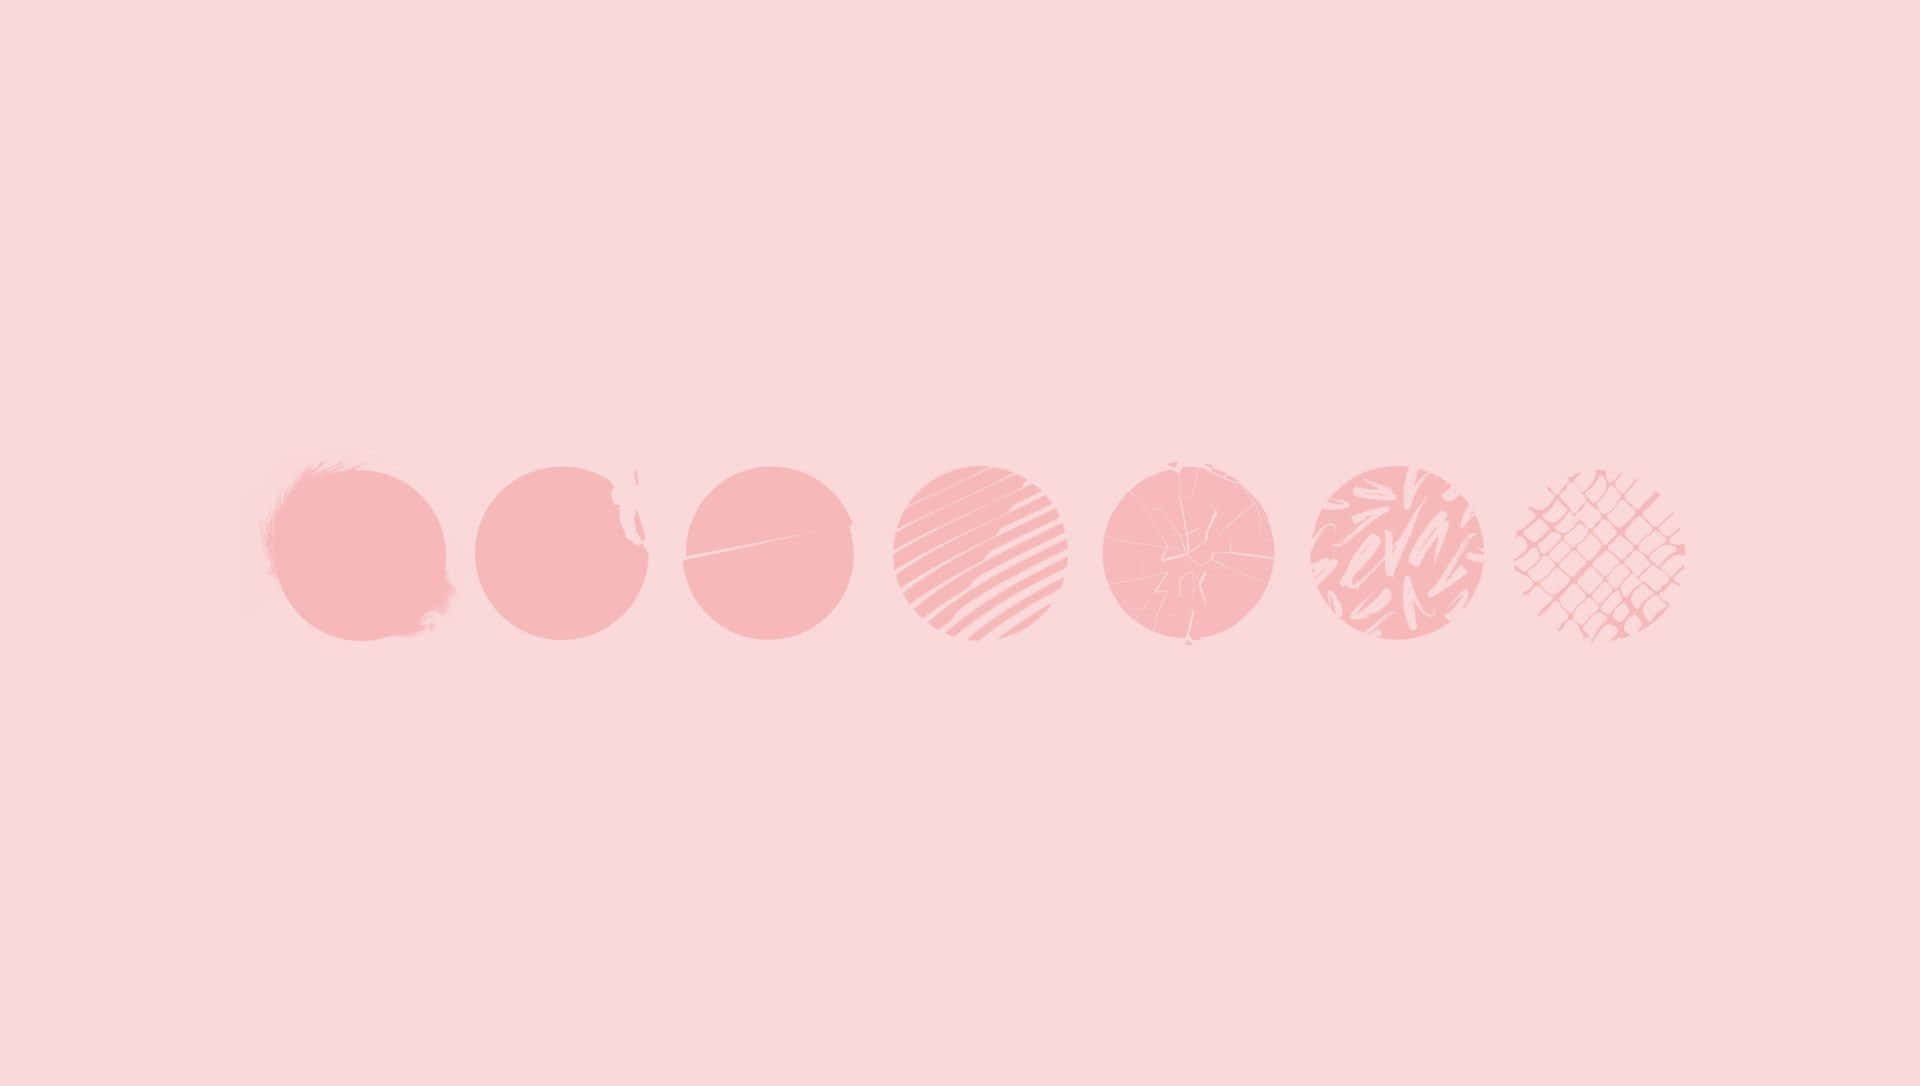 Desktopmit Ästhetischem Hintergrundbild Eines Mädchens Im Pinken Mondphasen-stil. Wallpaper